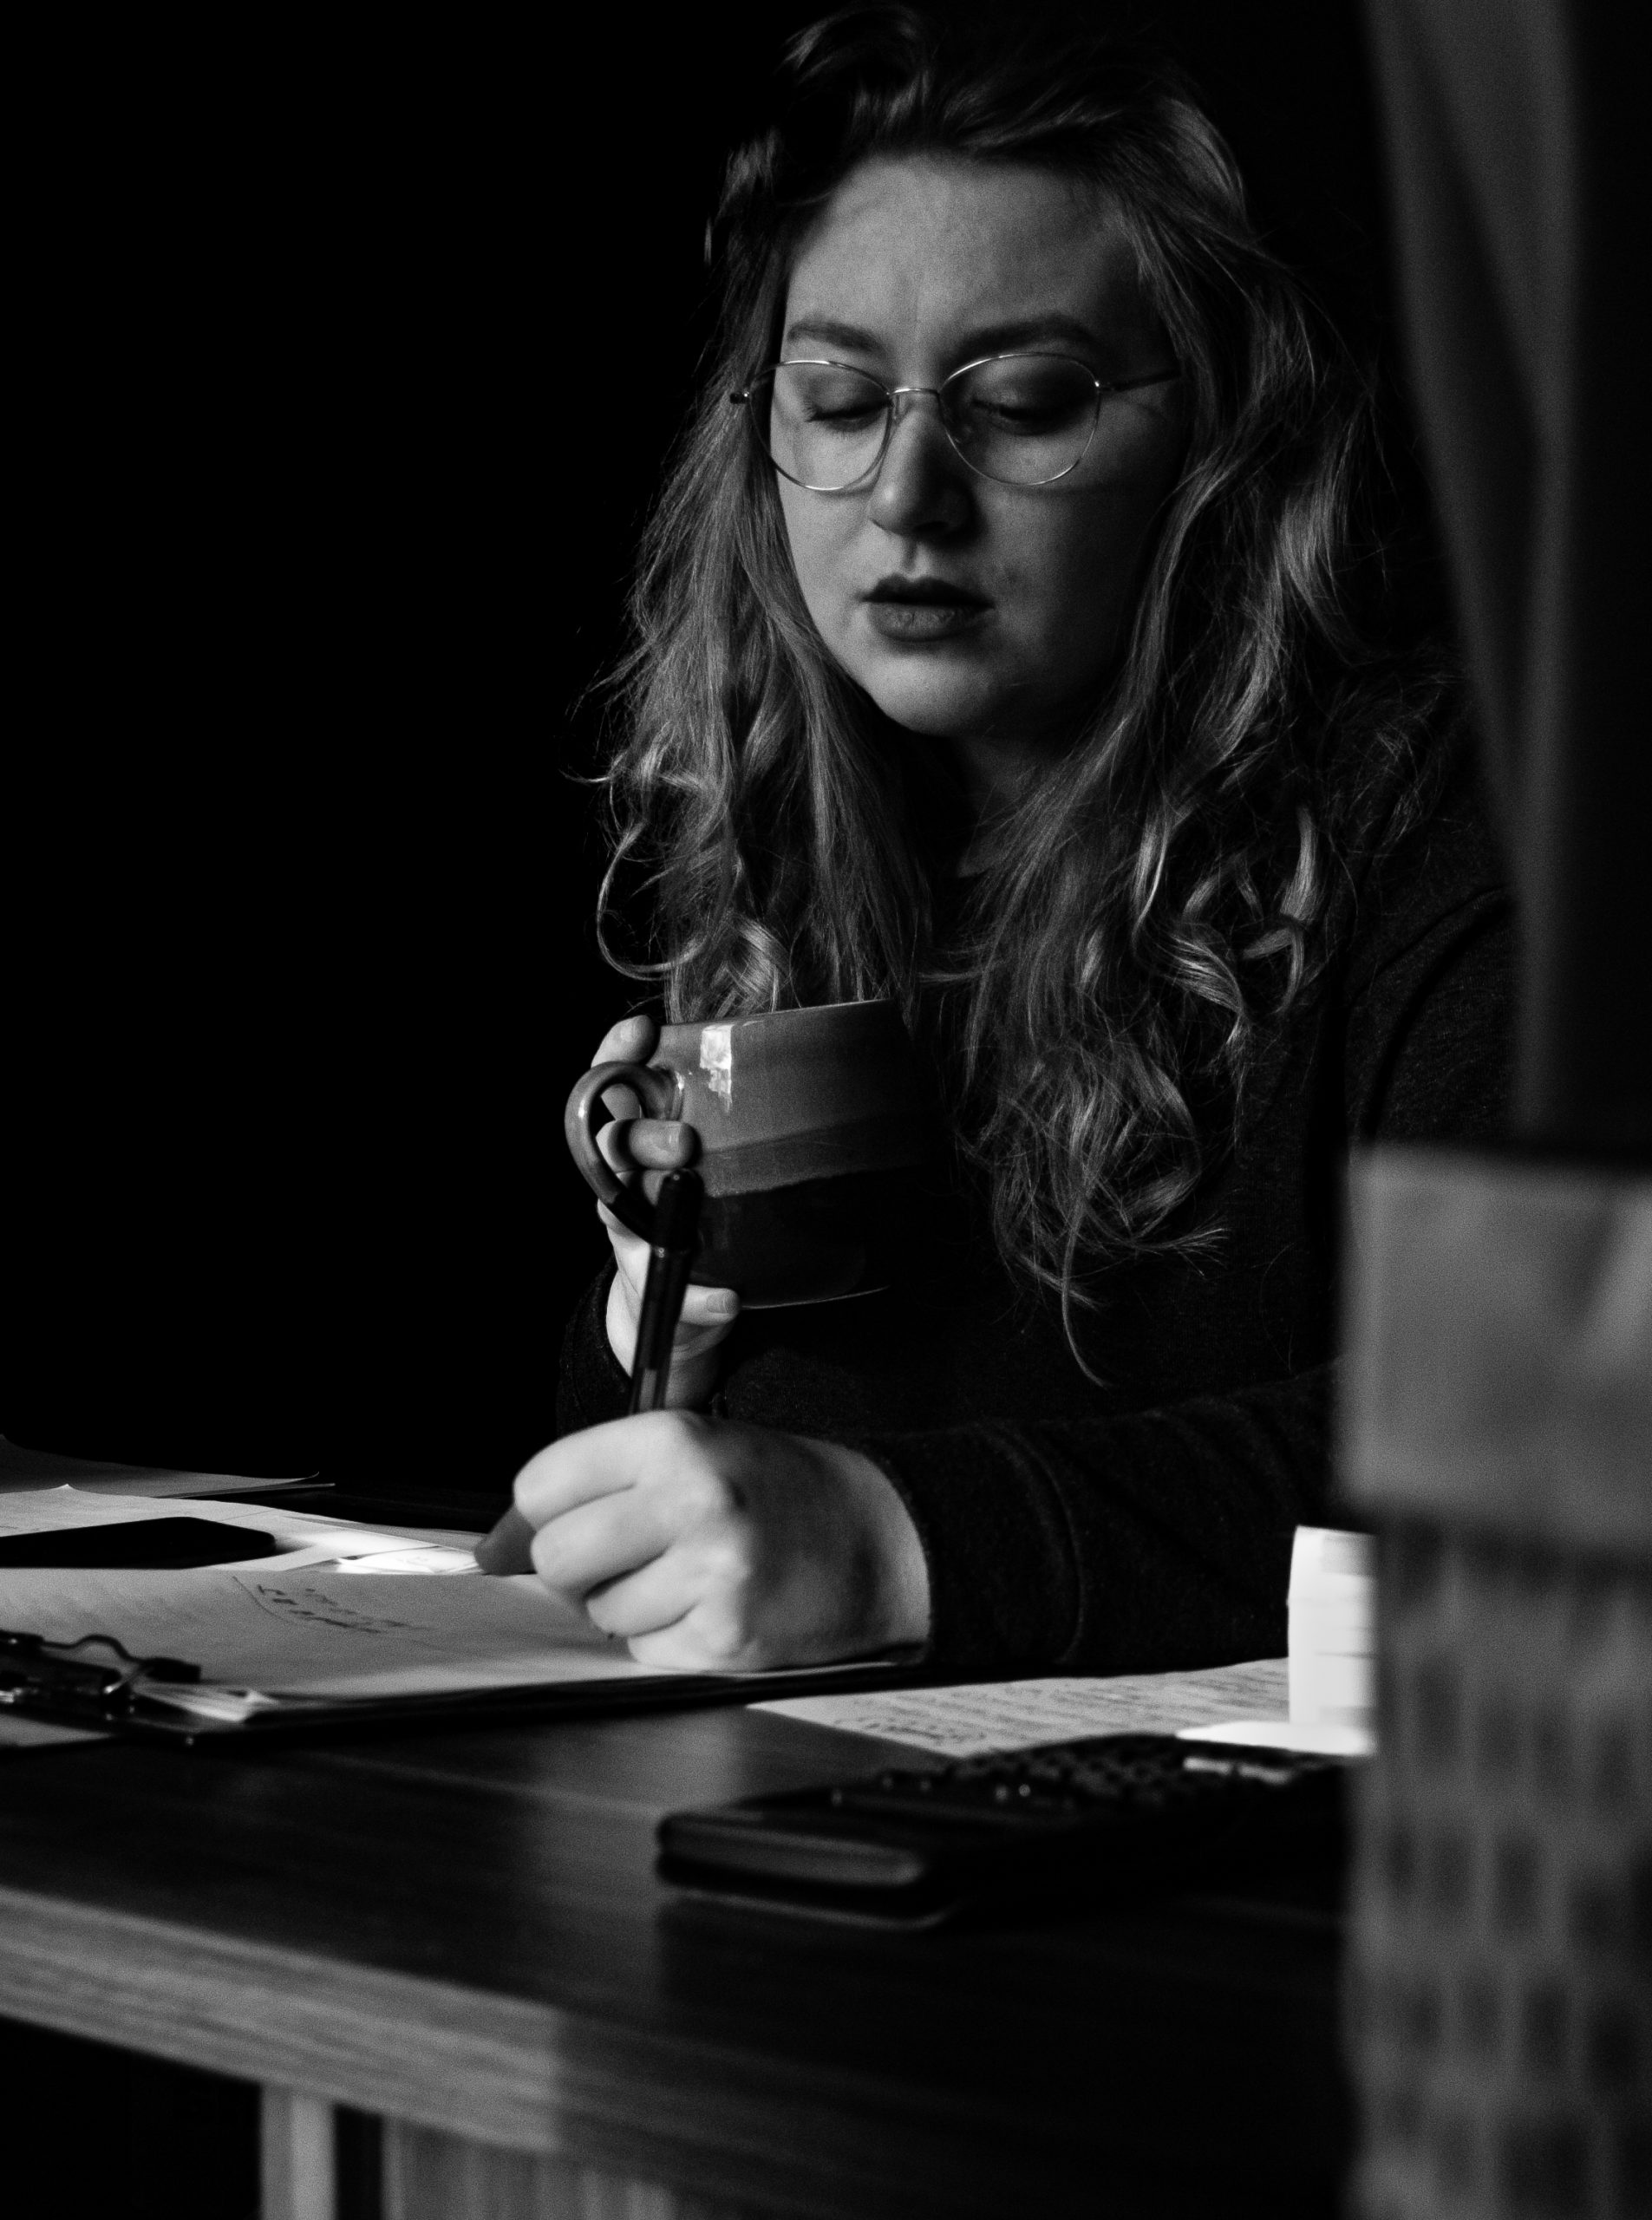 LowKey Selbstporträt, schwarz-weiß, konzentriert arbeitend